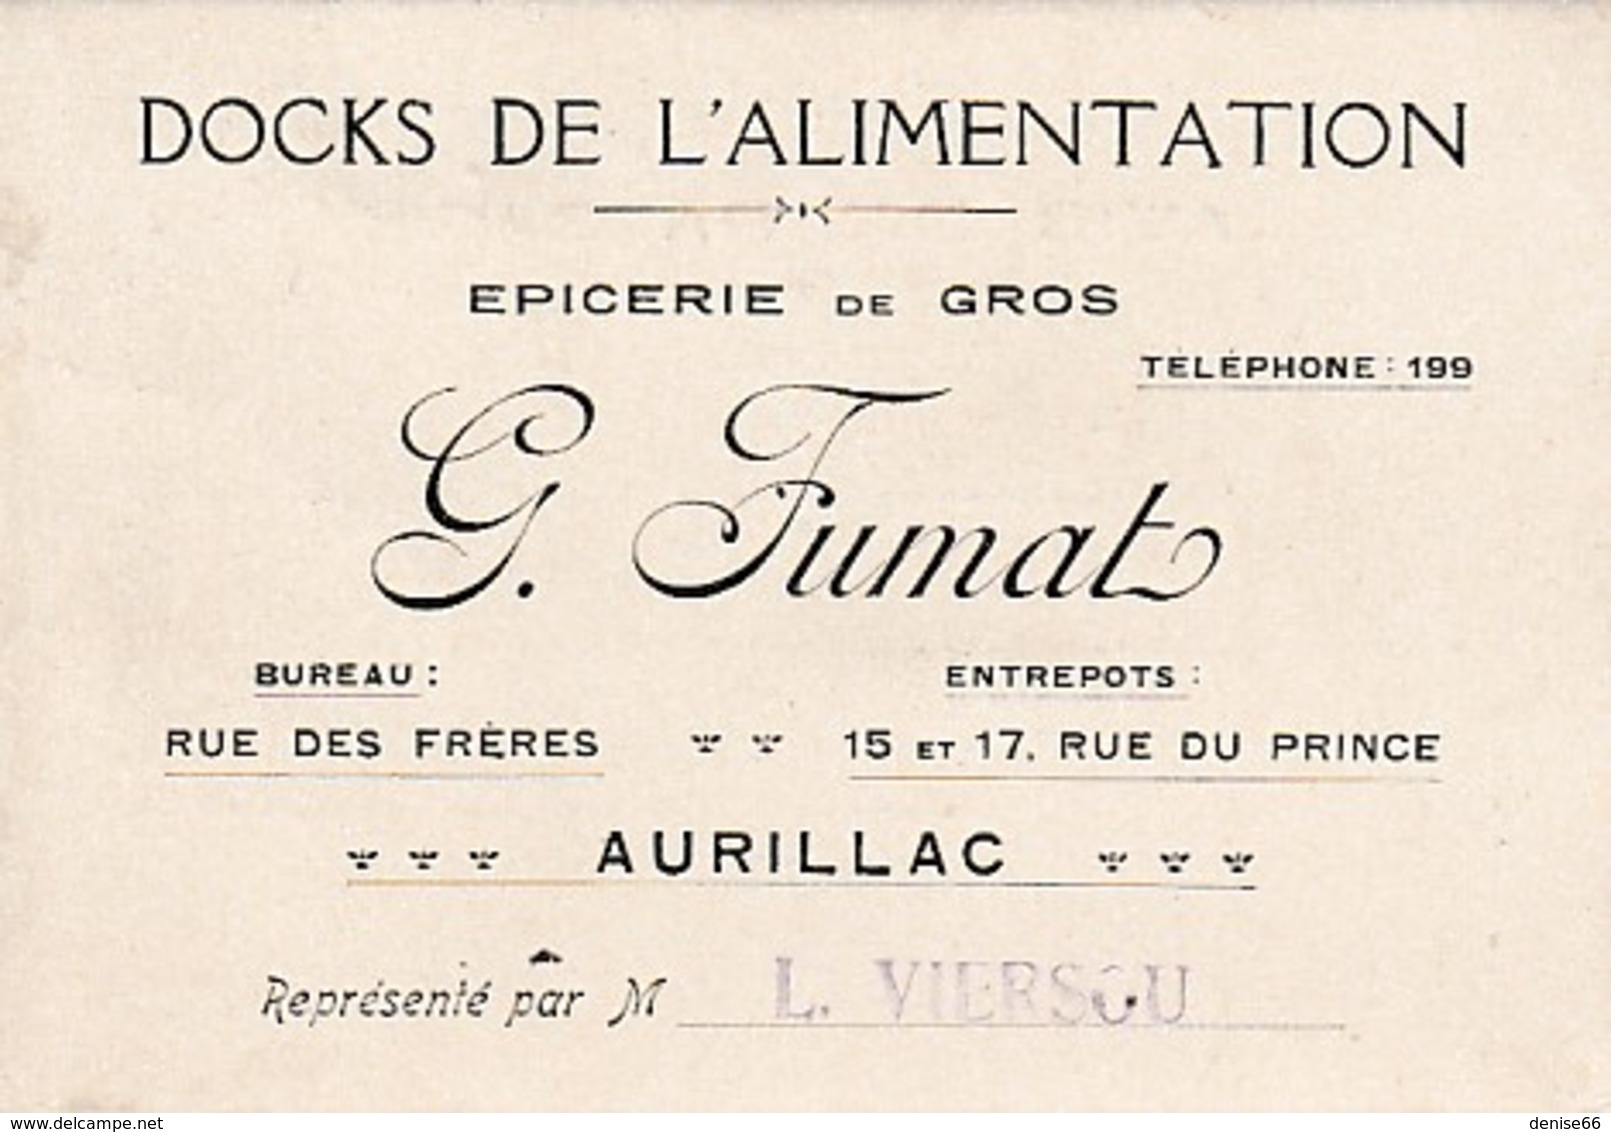 AURILLAC - DOCKS DE L'ALIMENTATION - Épicerie En Gros - G. FUMAT - Carton D'Avis De Passage - - Documents Historiques